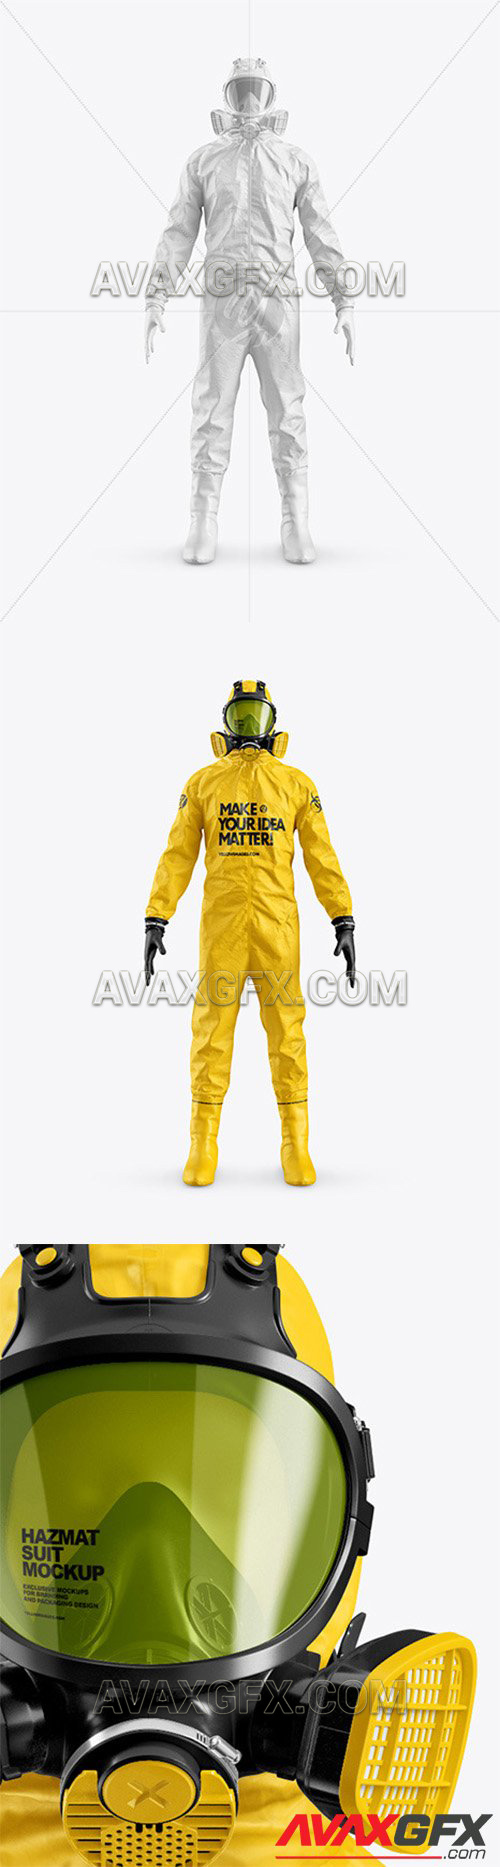 Hazmat Suit Mockup 59325